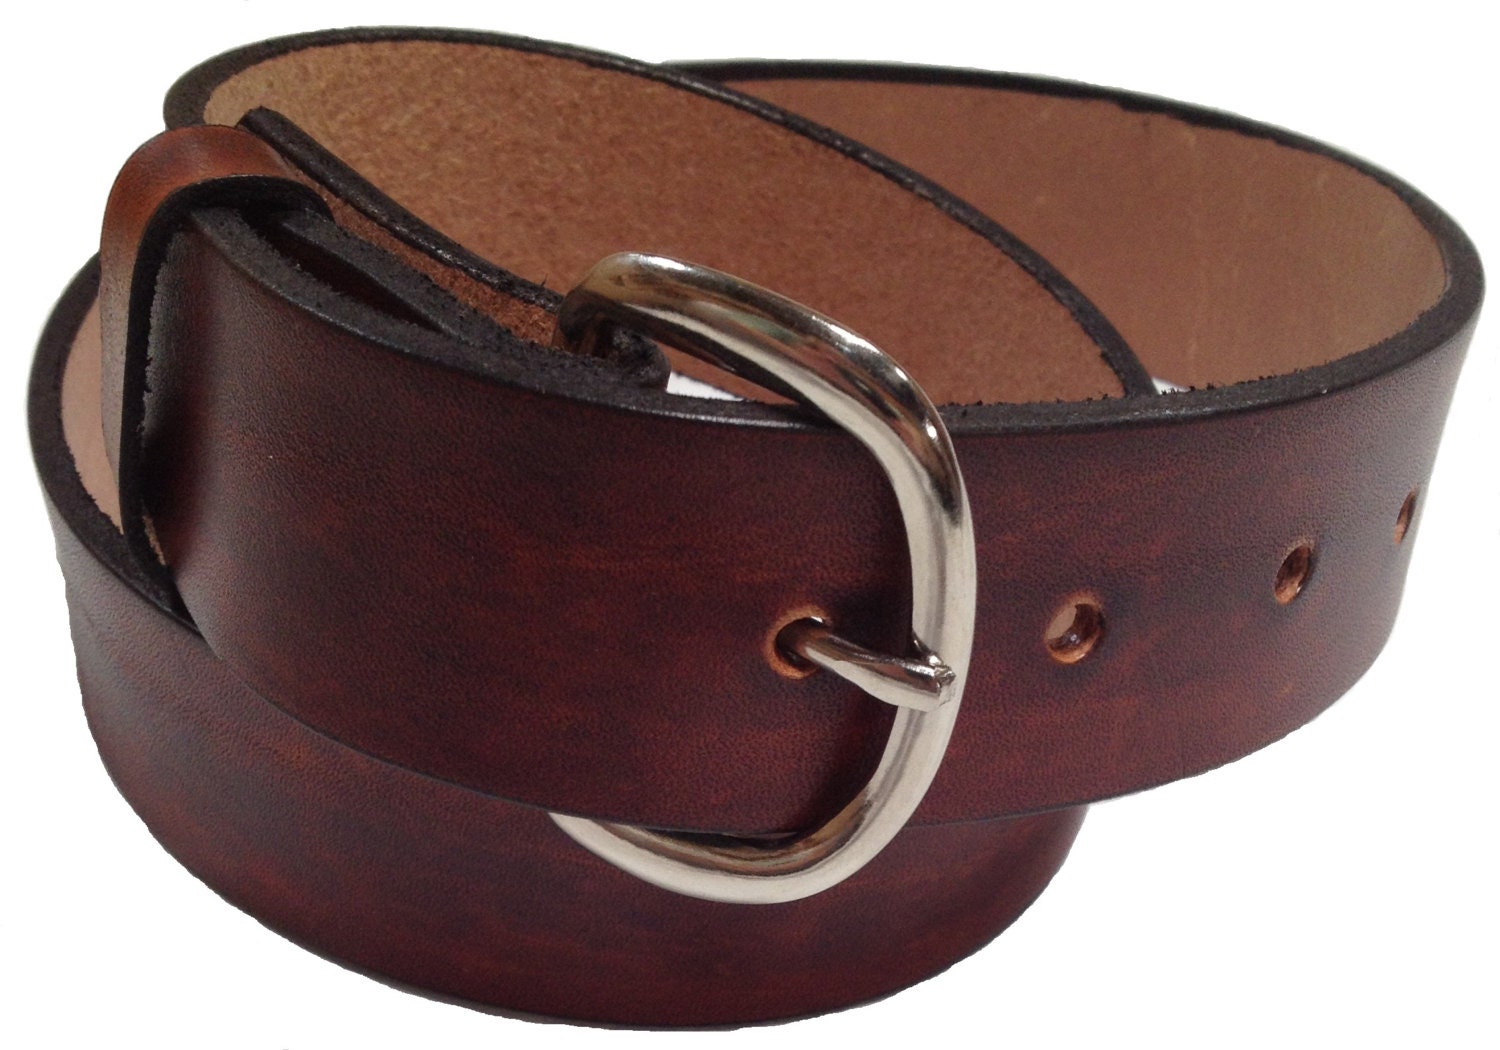 Mens Leather Belt 1.5 Wide Size 38 Choose Color